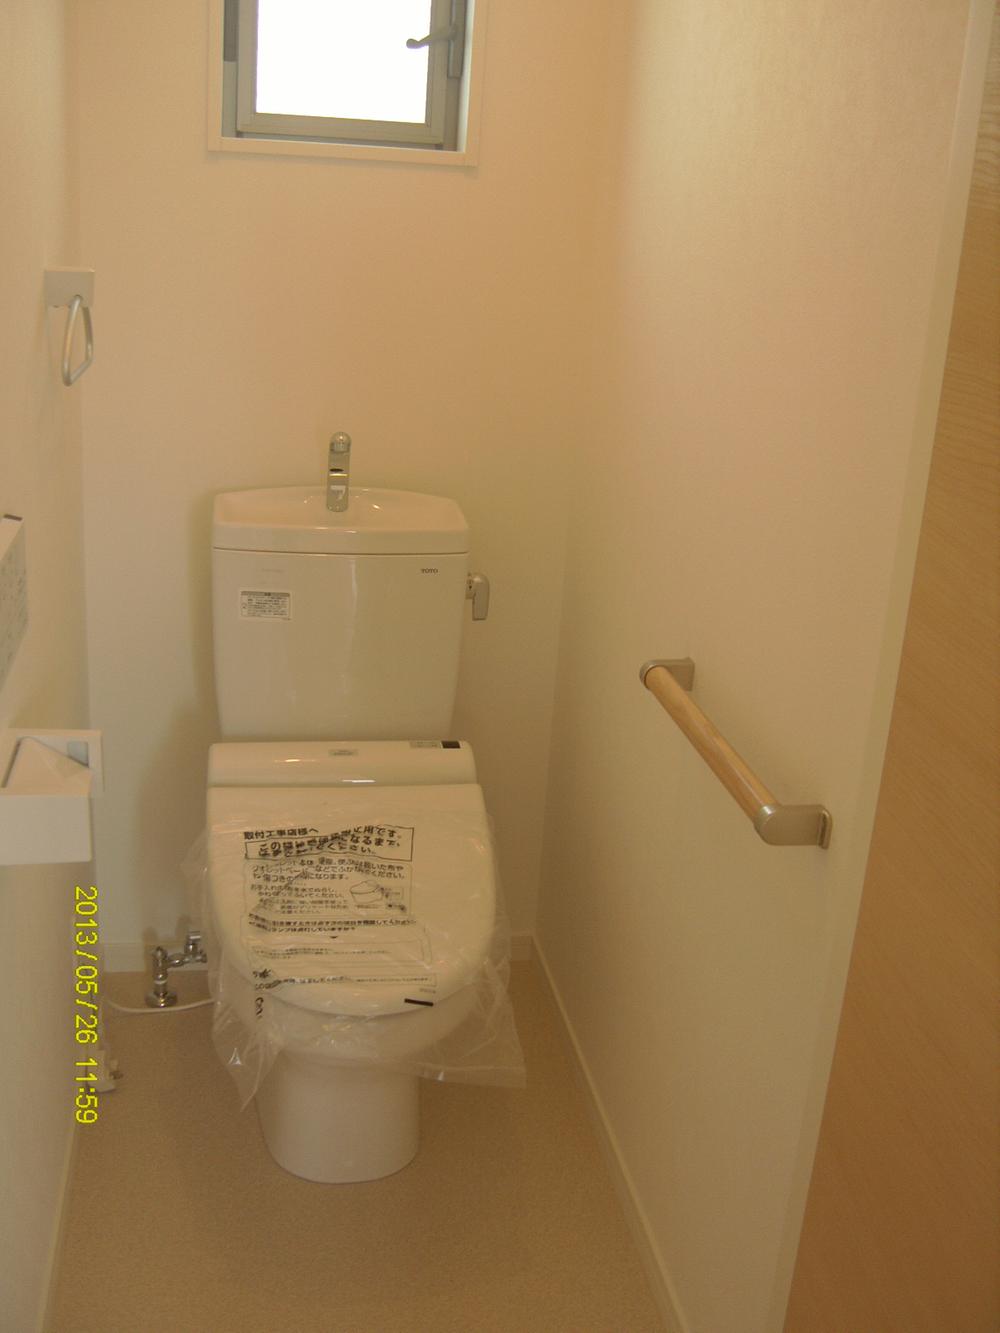 Toilet. 1st floor ・ Second floor toilet (first floor with bidet)